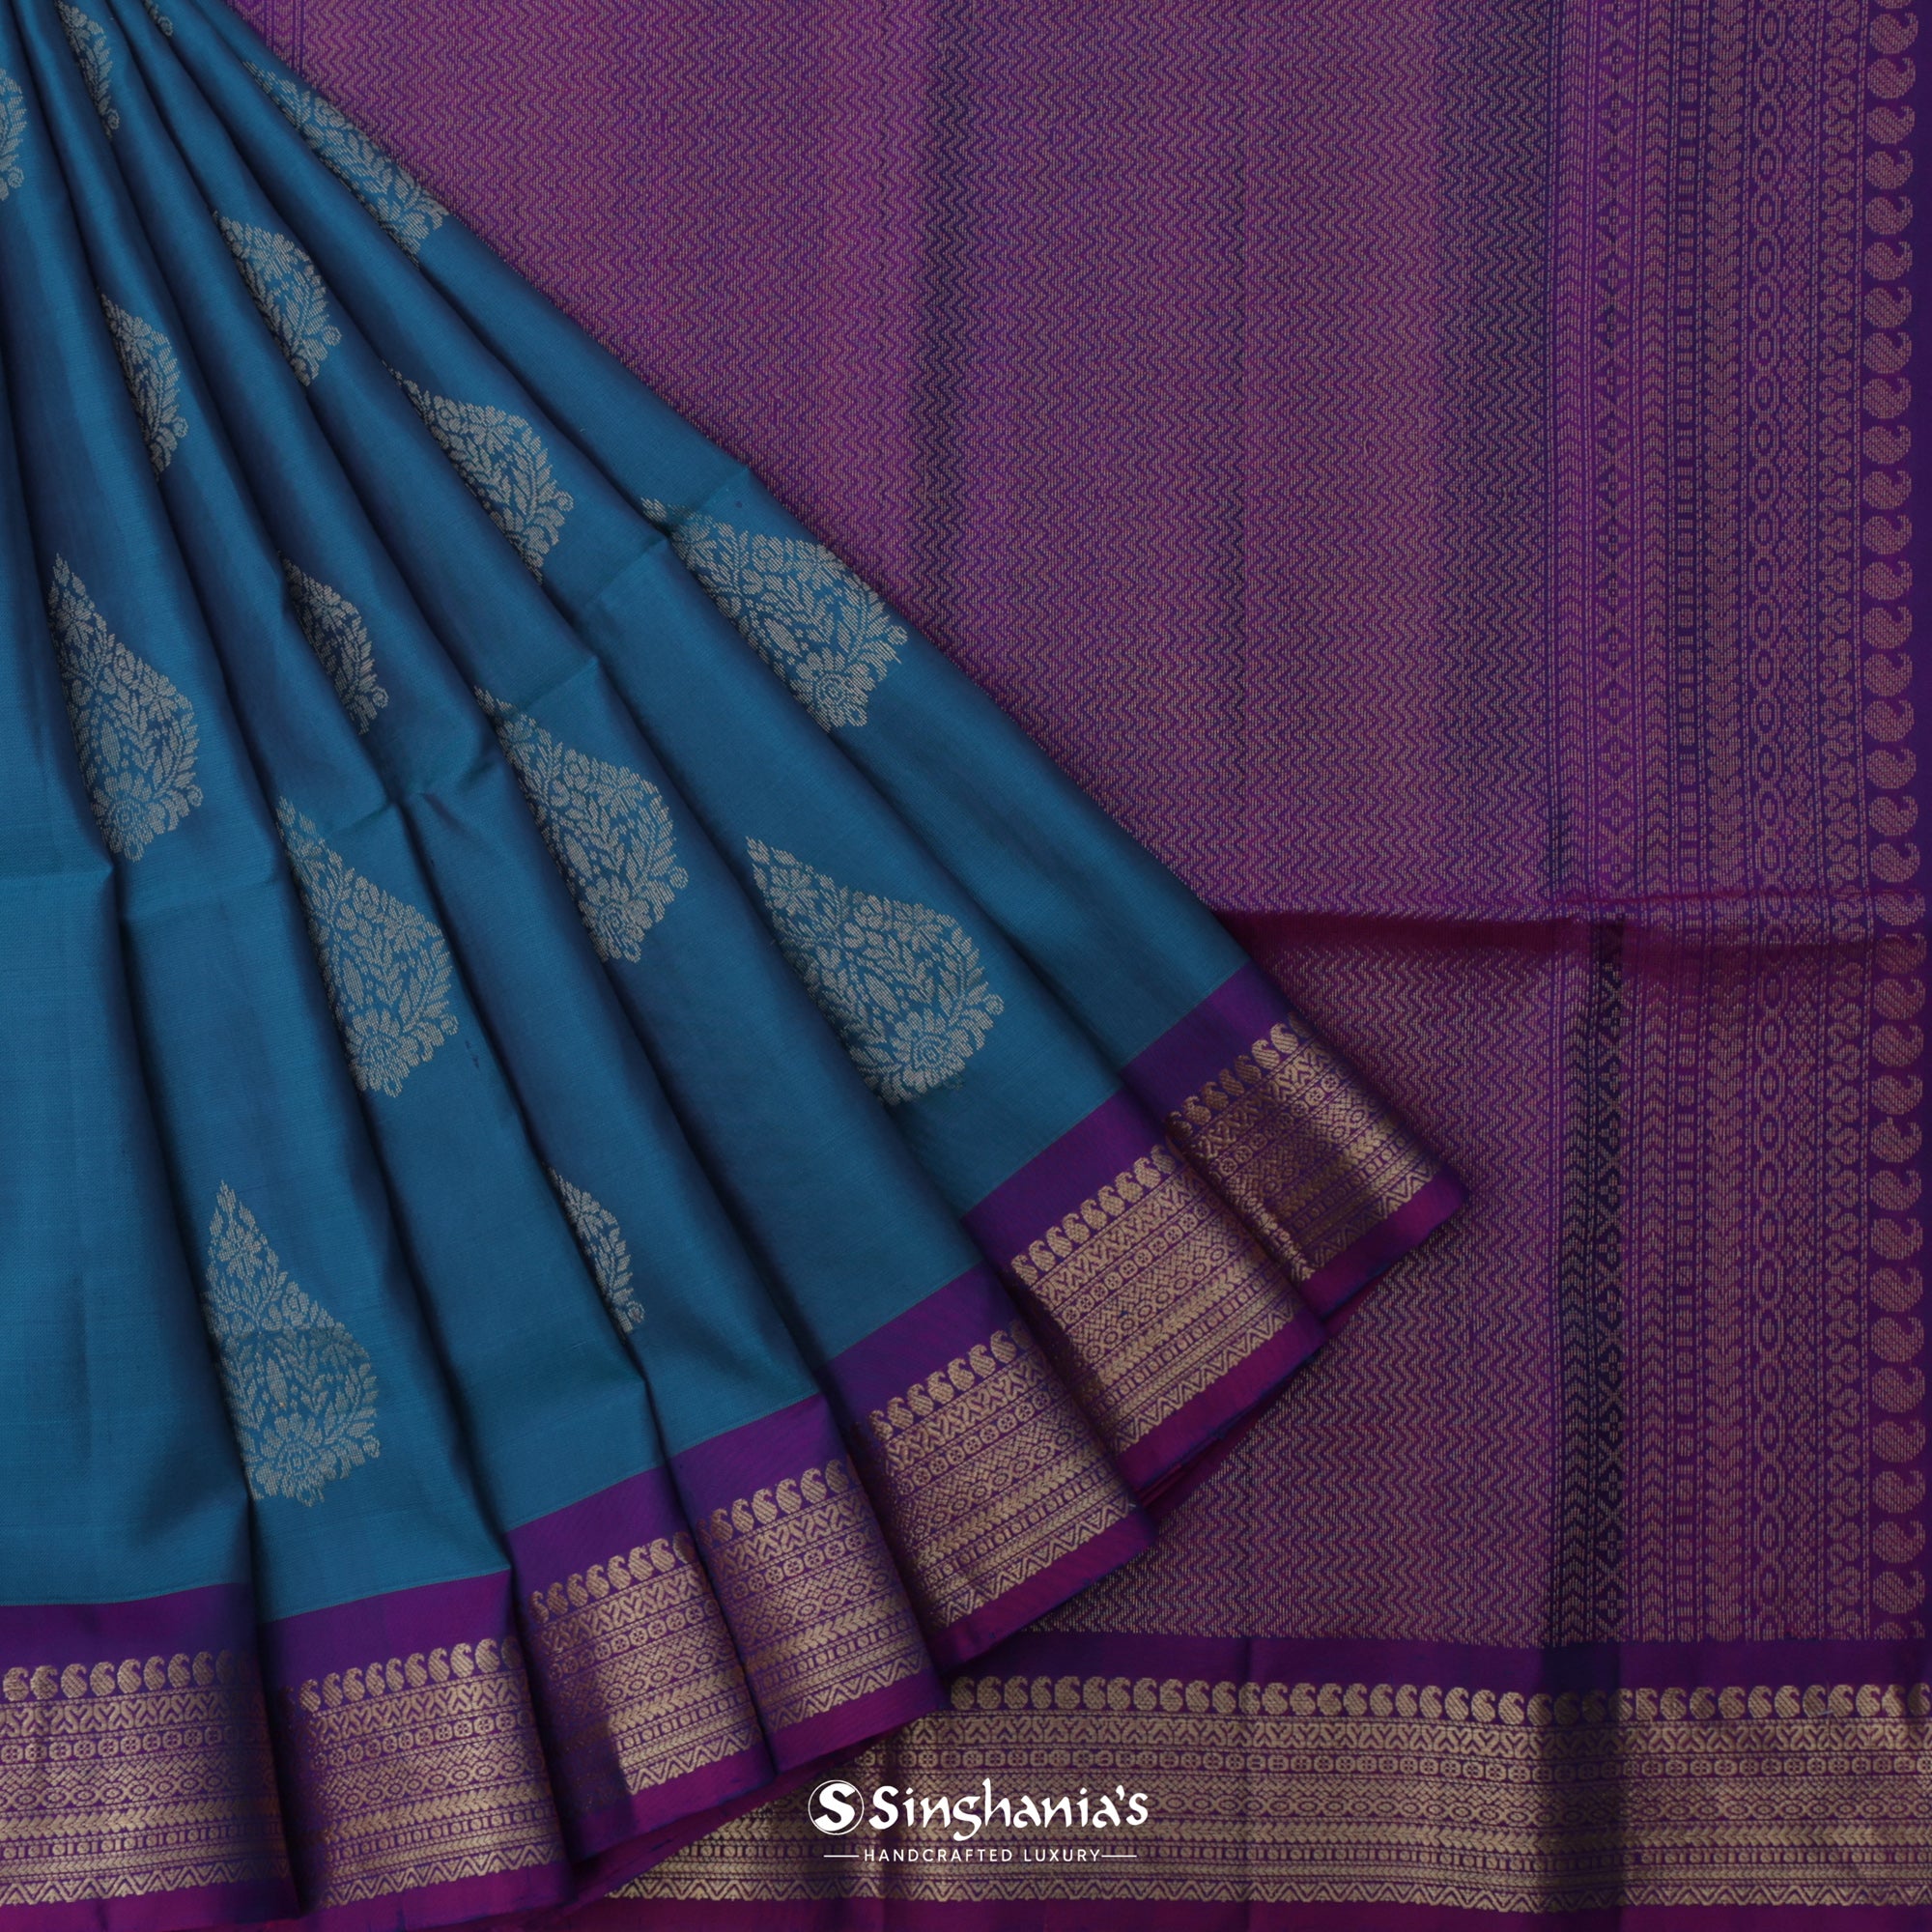 Imperial Blue Kanjivaram Silk Saree With Floral Buttas Weaving